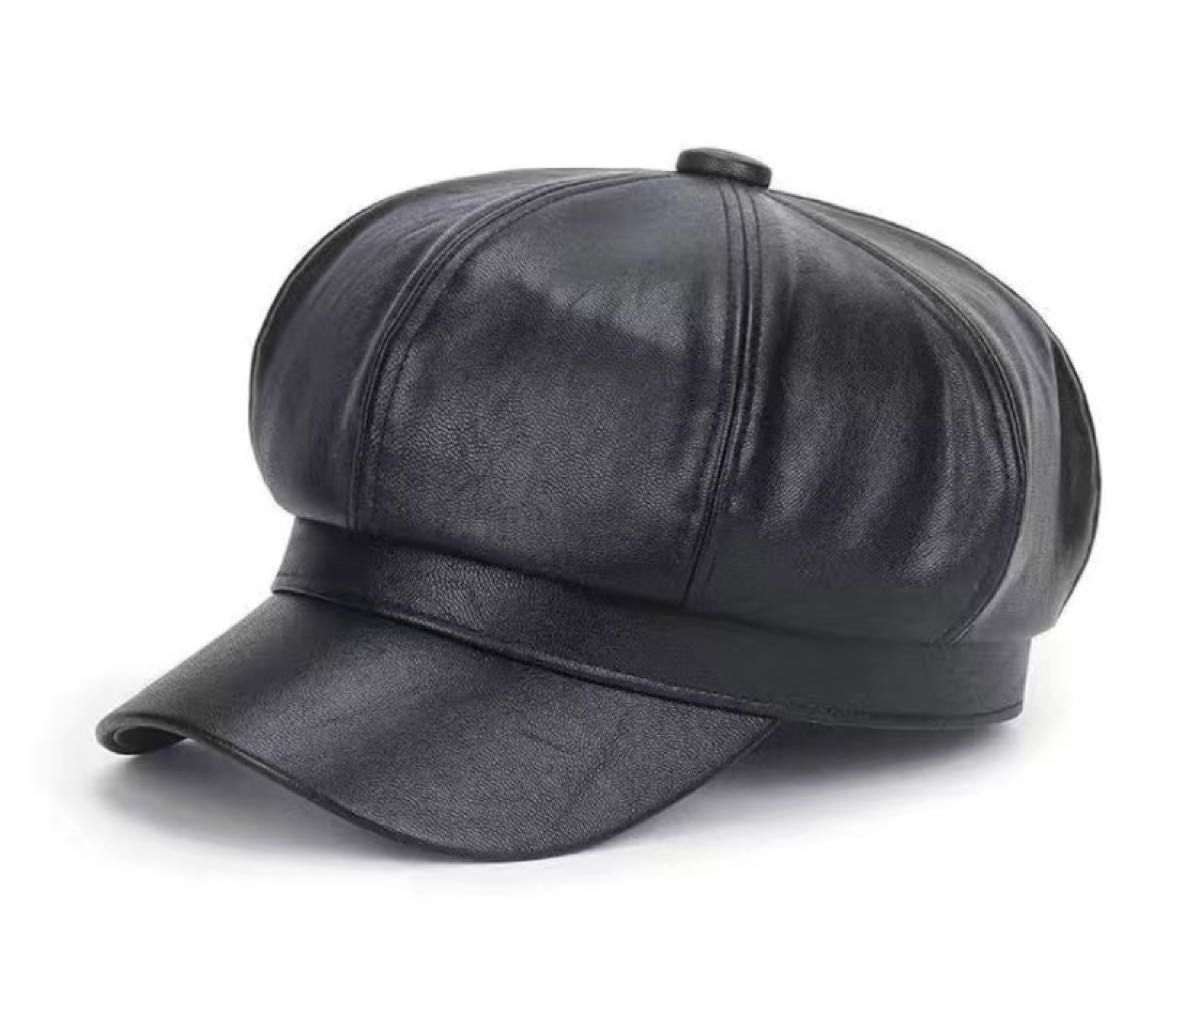 ブラックベレー帽 PU レザー 帽子 レディース オシャレ ファッション 小物 無地 シンプル 季節感 小顔効果 八角形 かわいい